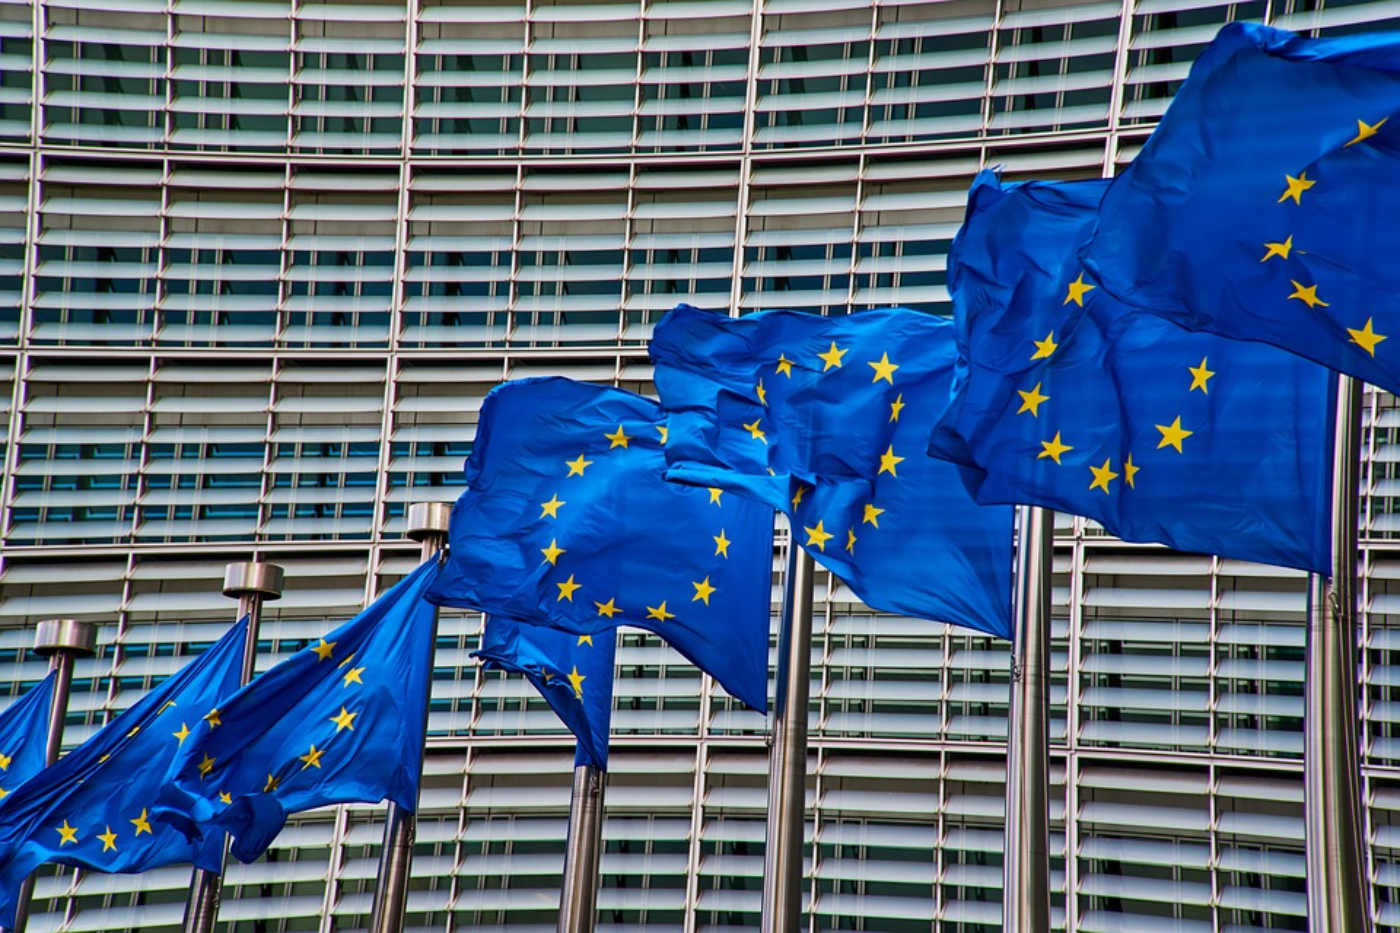 Pagamenti, l’Ue contro il riciclaggio: proposto un tetto massimo di 10 mila euro in contanti